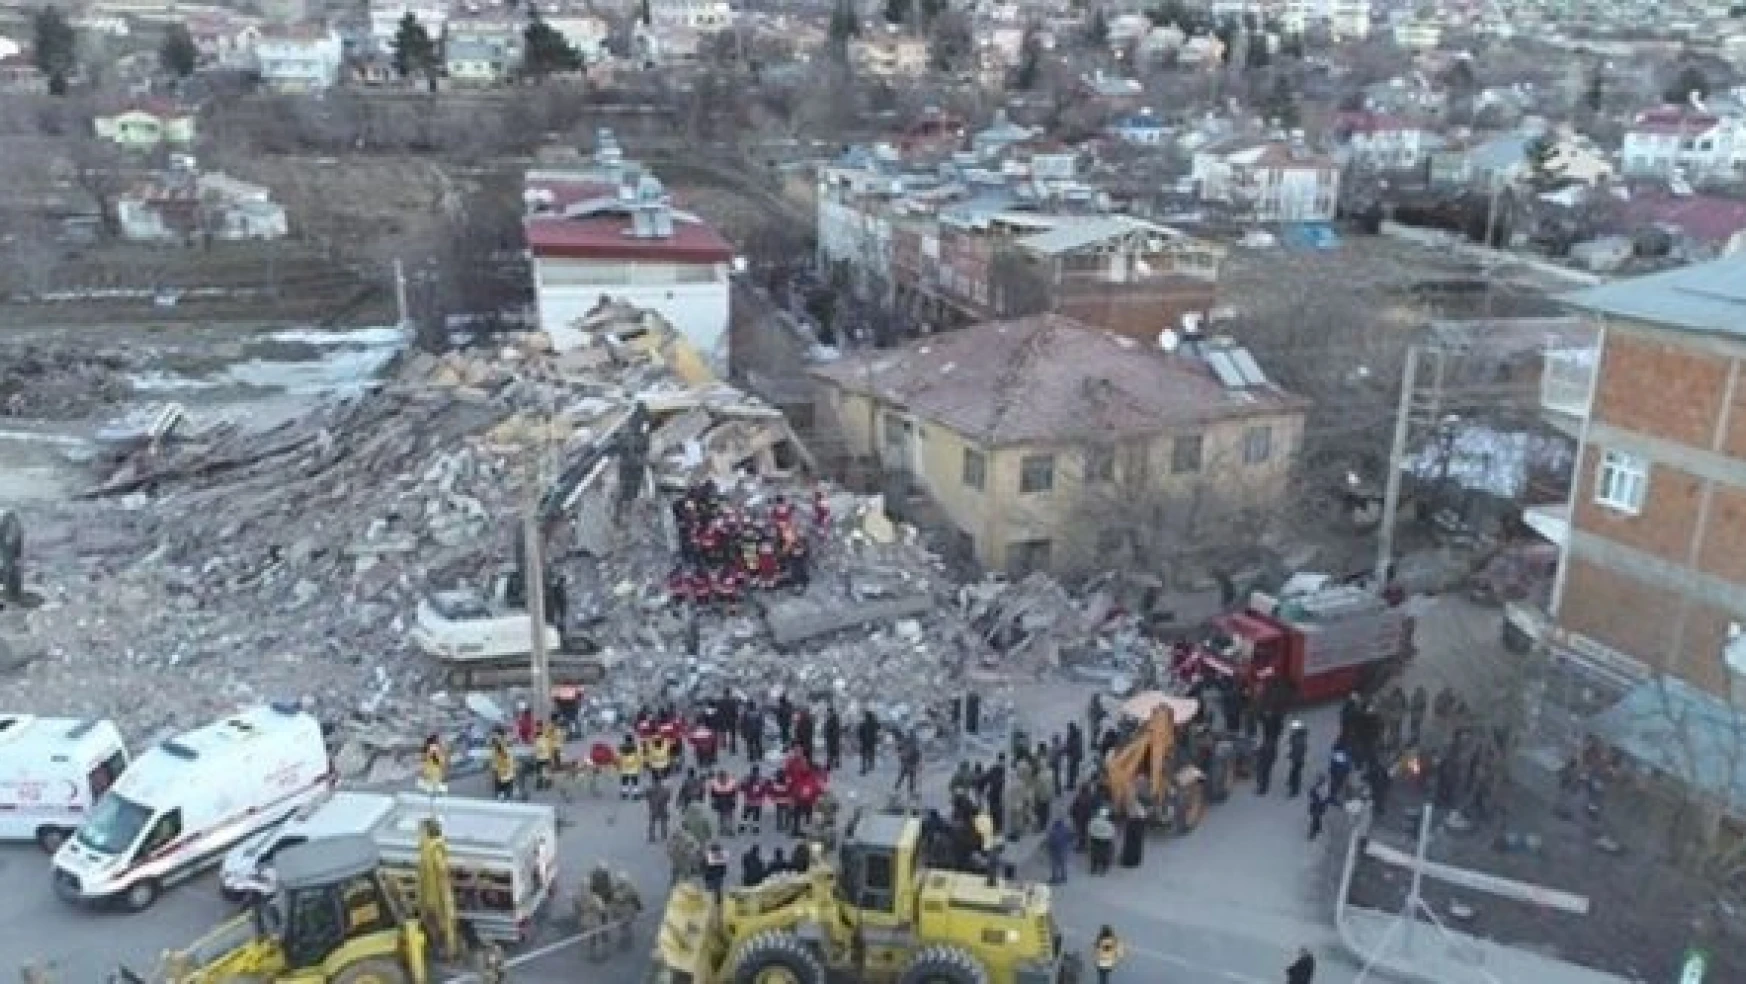 Elazığ depremi ne zaman oldu? Elazığ depreminde kaç kişi öldü? 